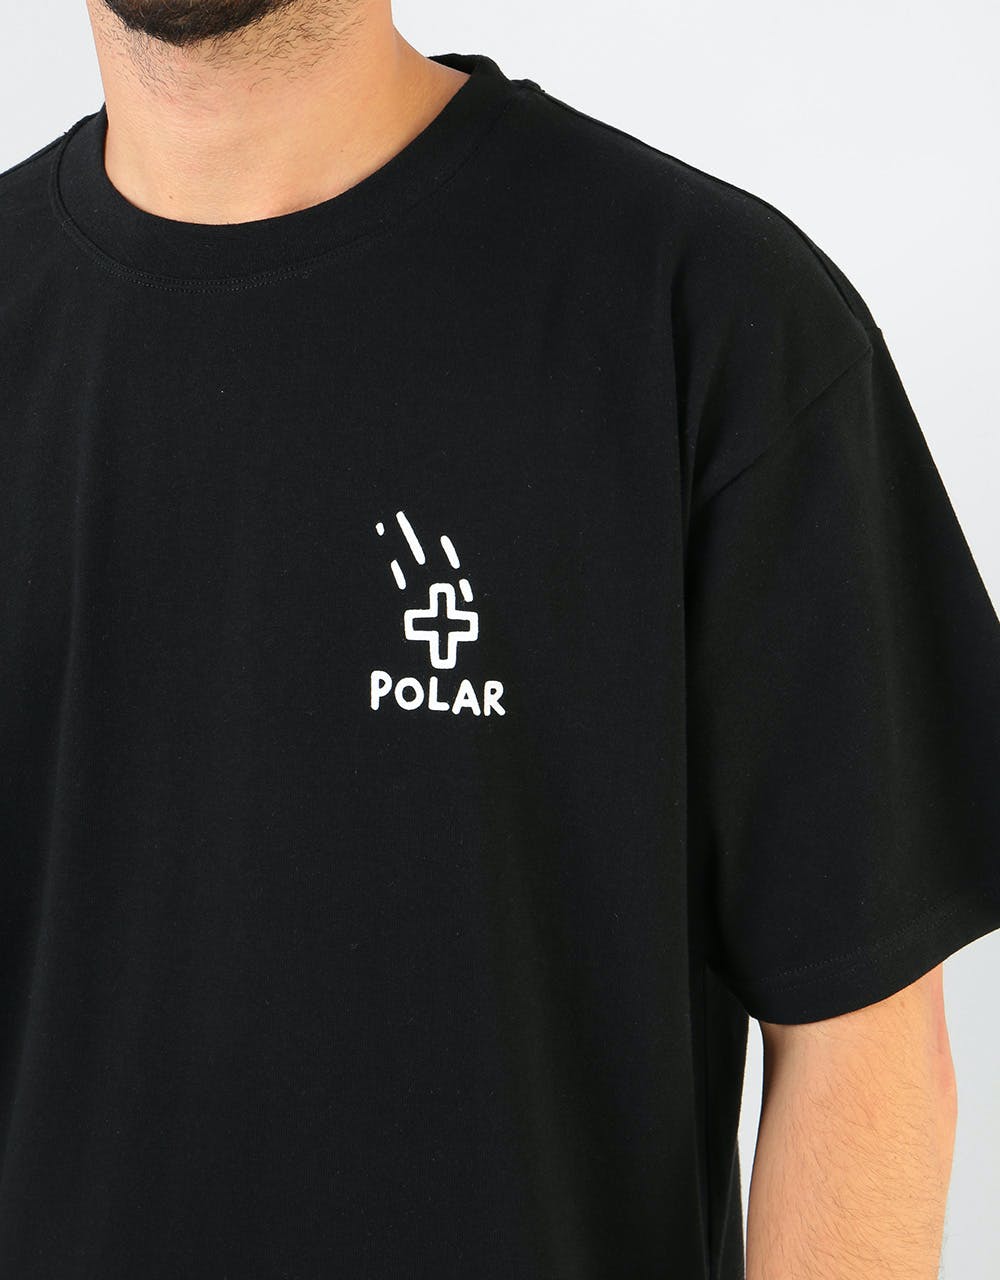 Polar Plus T-Shirt - Black